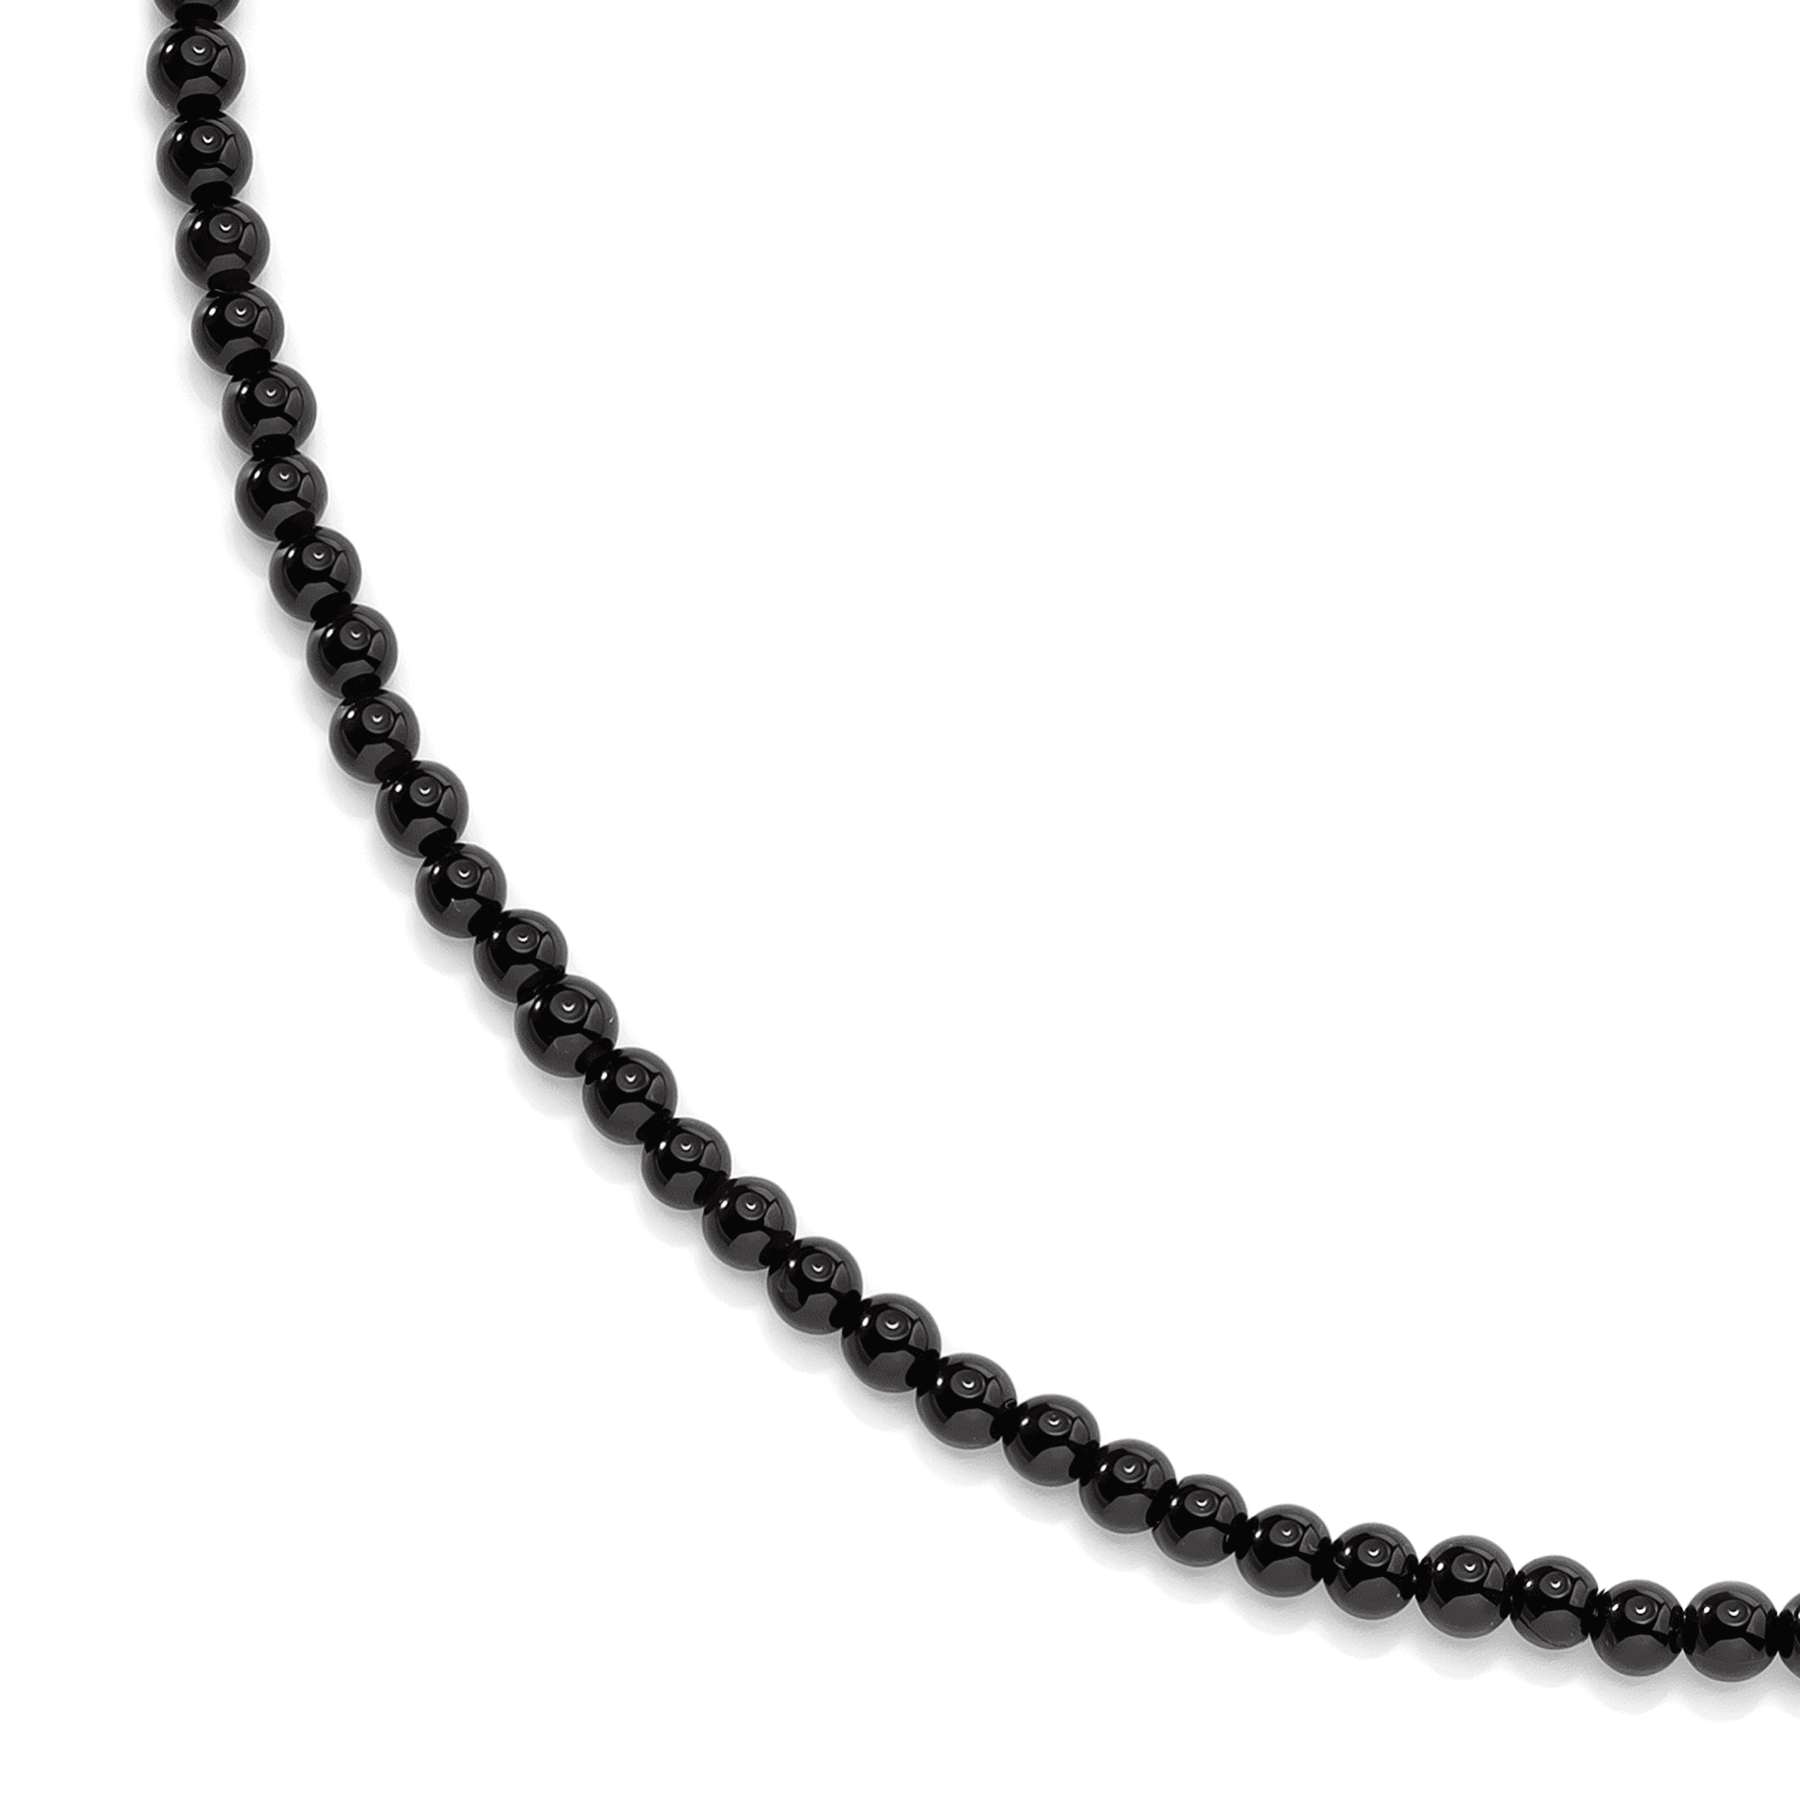 Black onyx necklace choker on white background